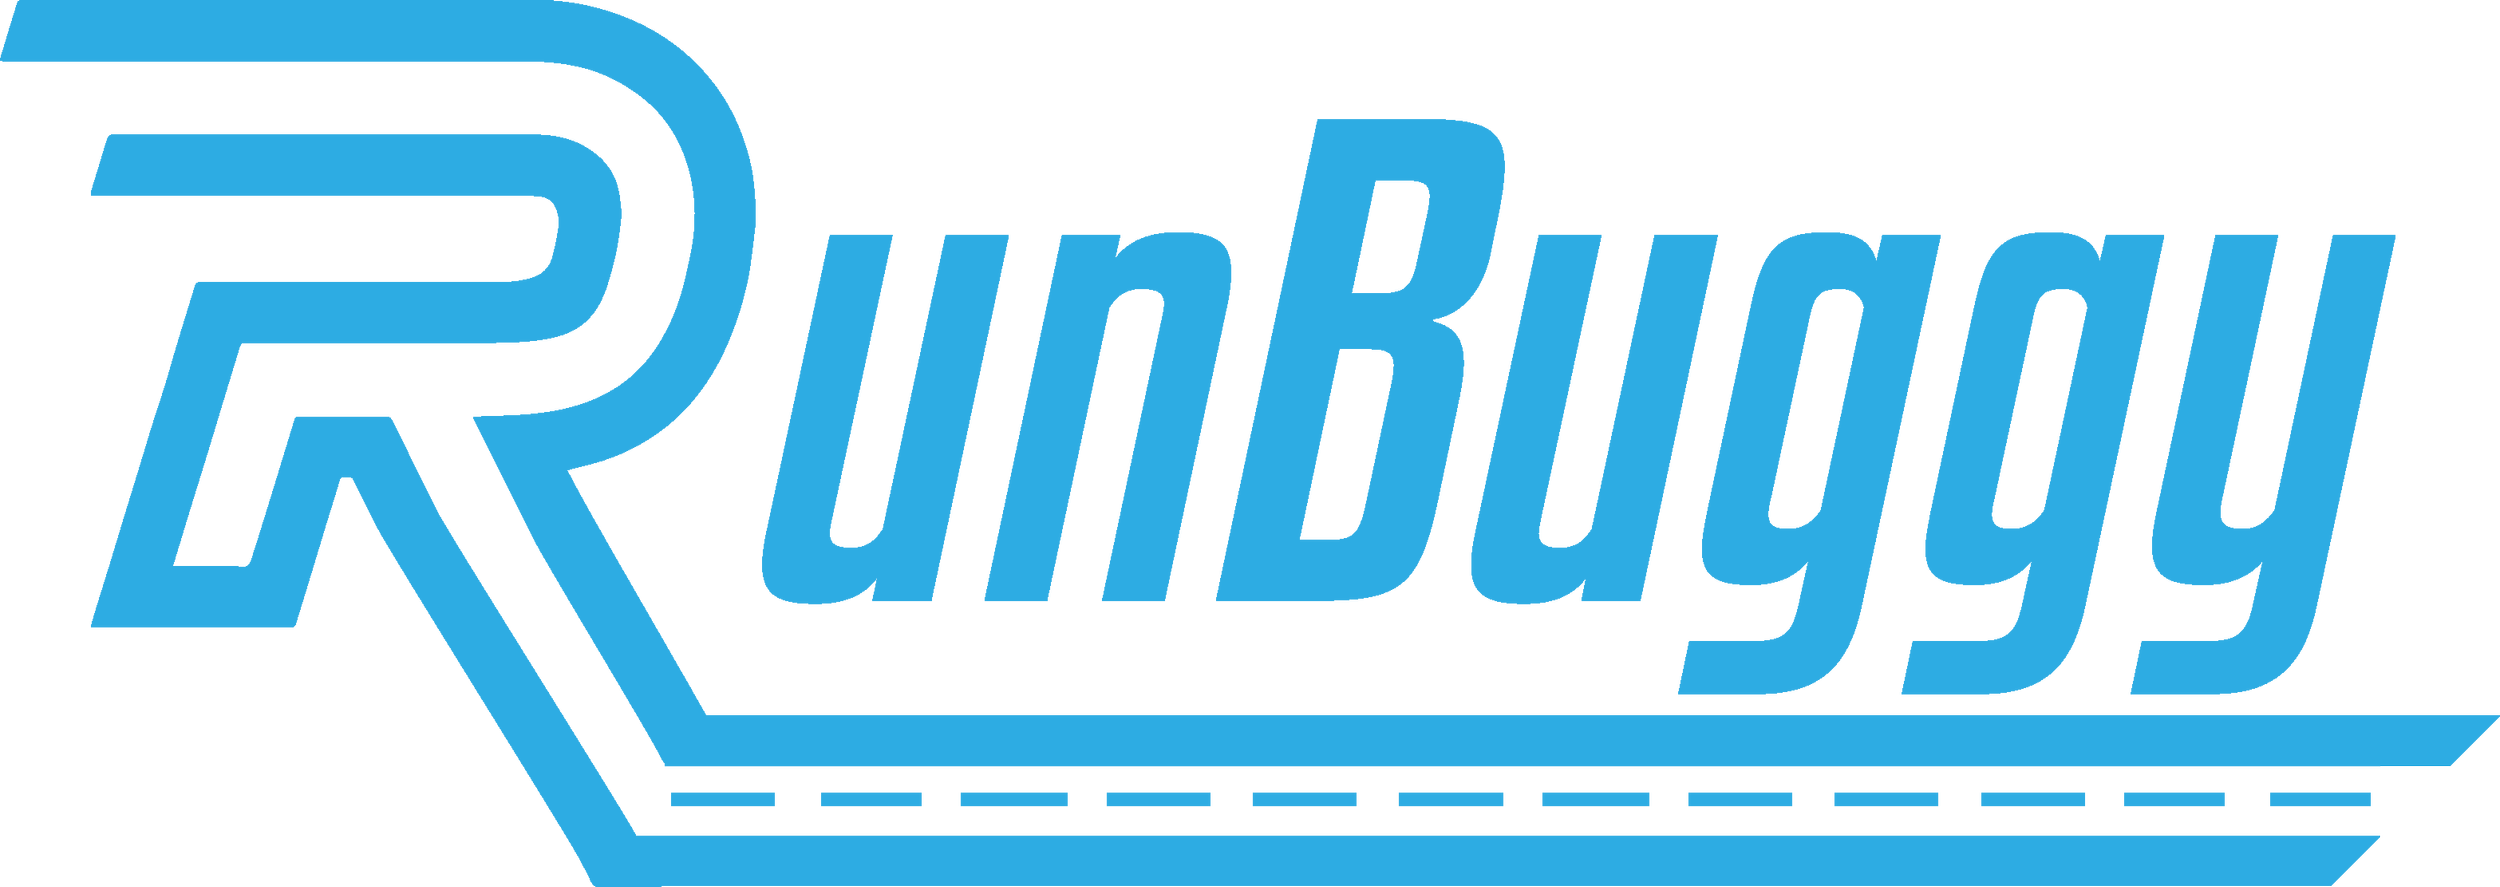 RunBuggy-Logo-Tranparent.png